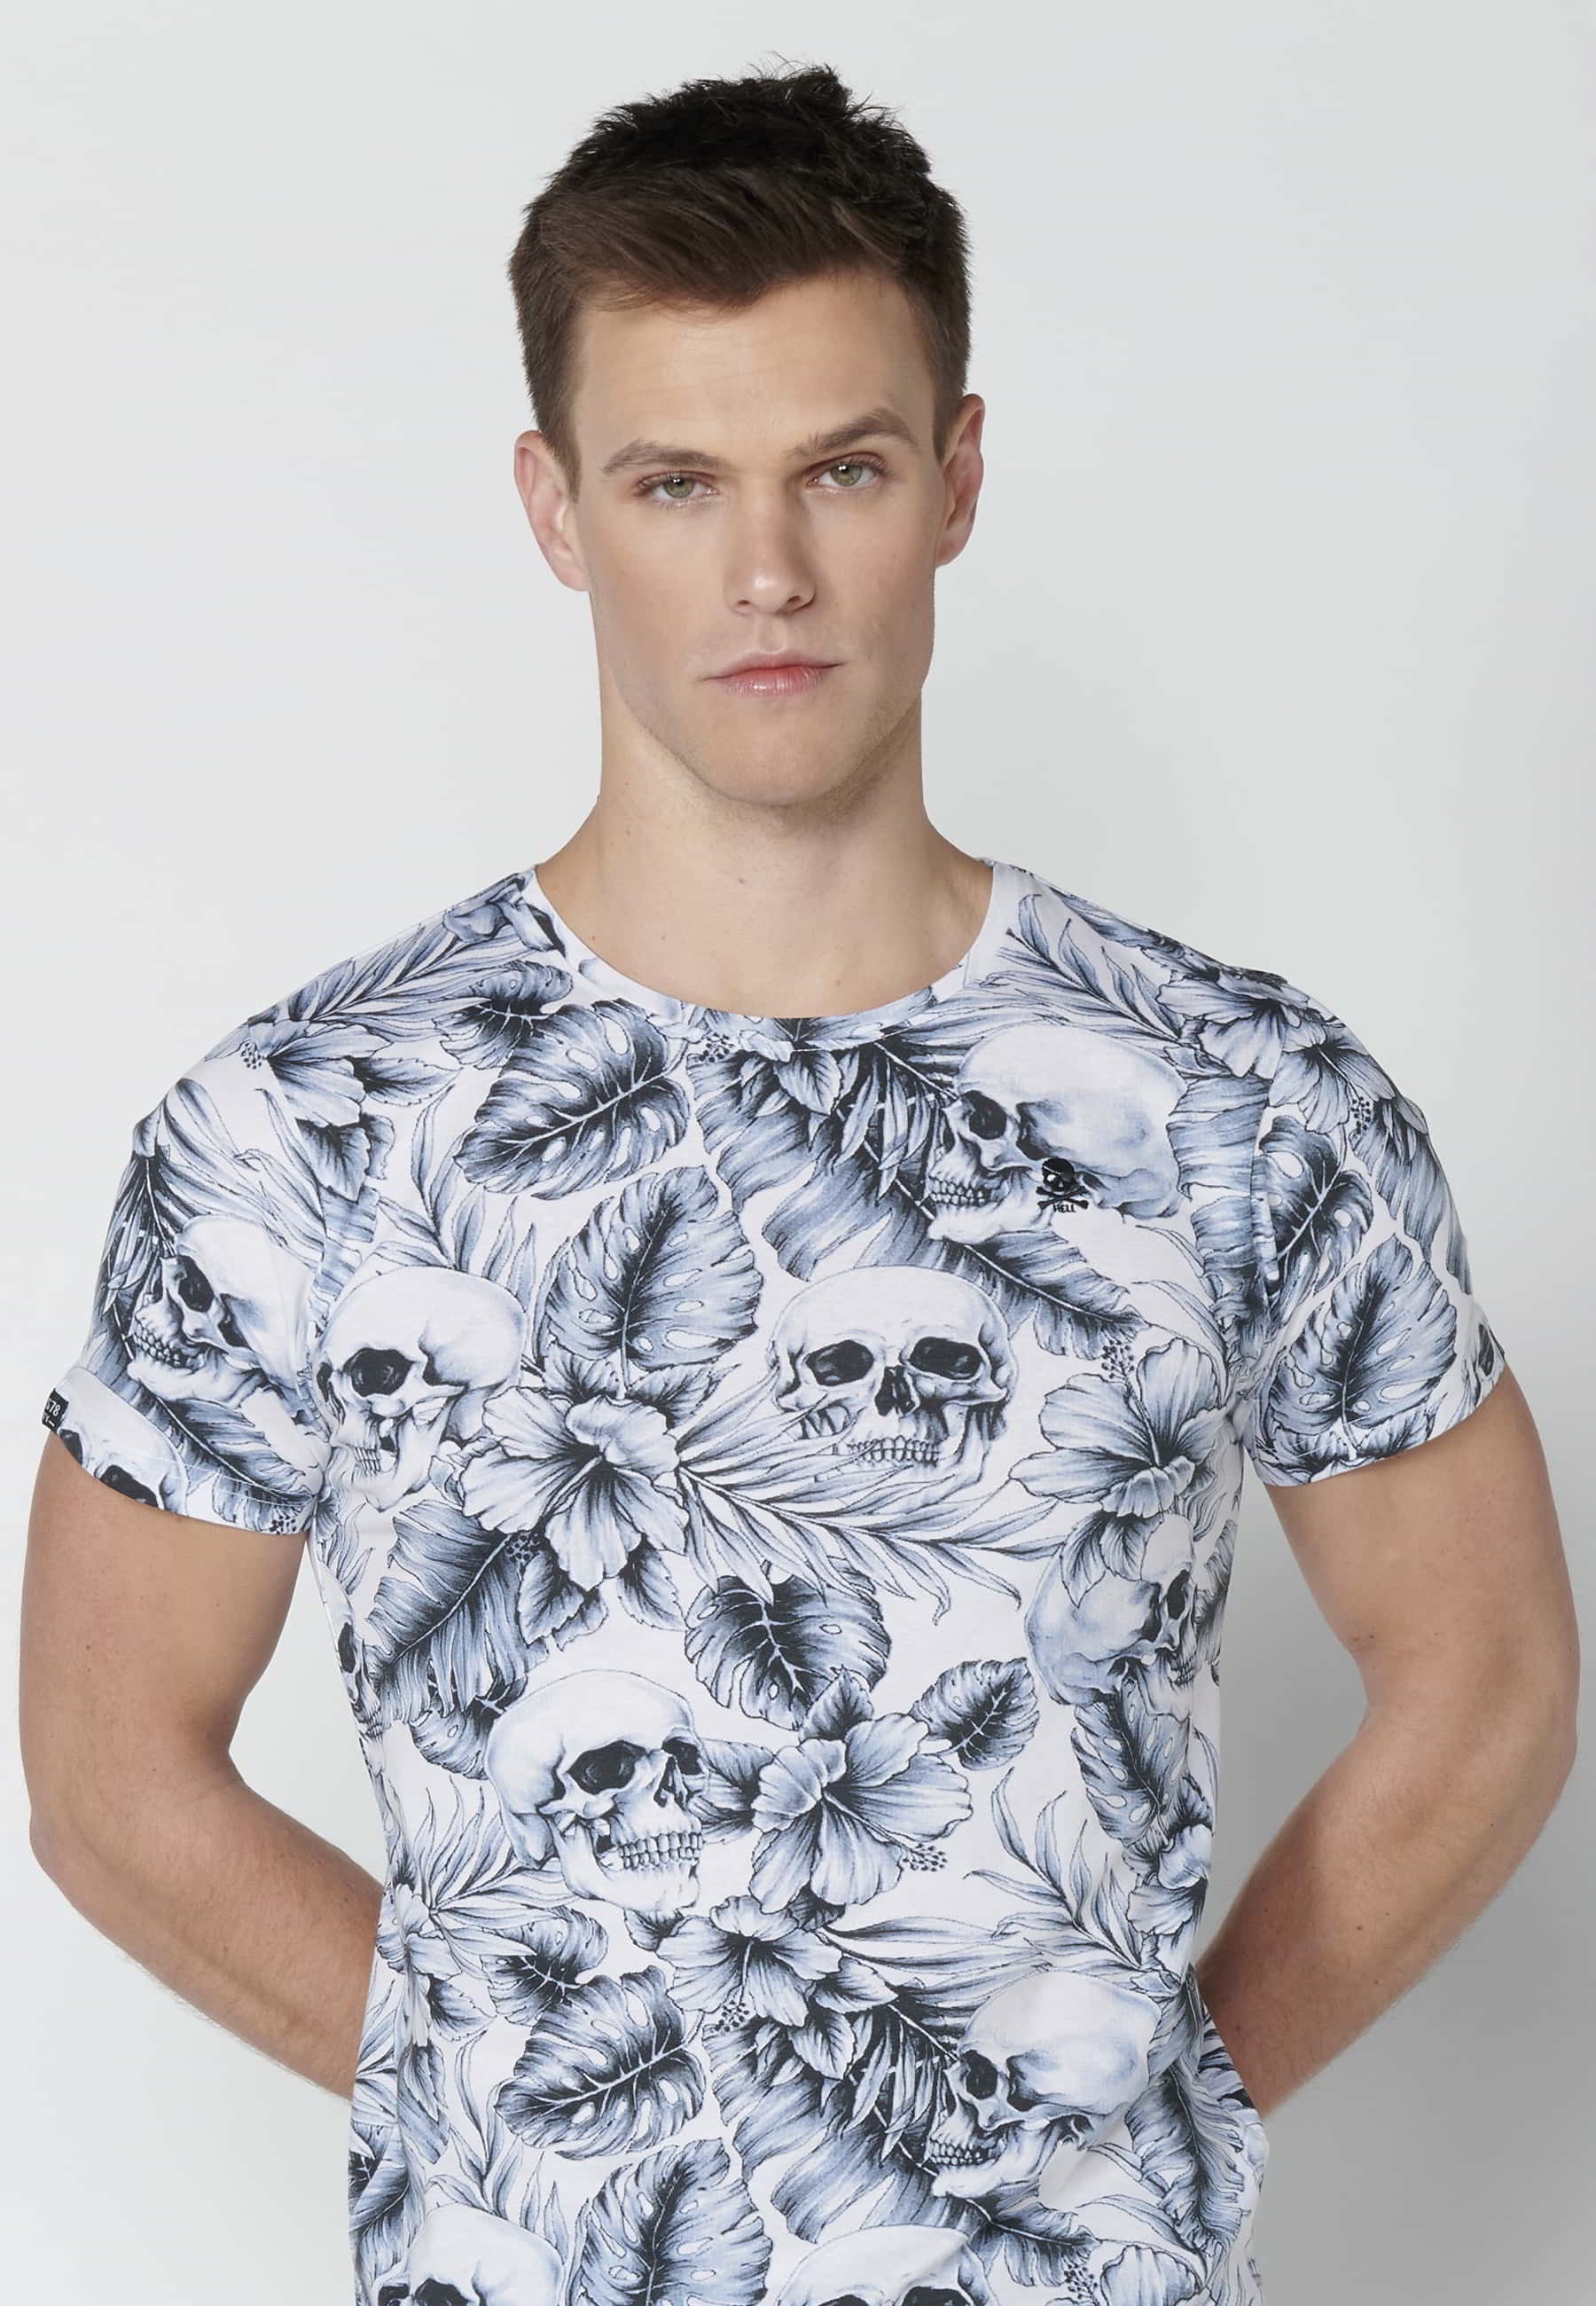 T-shirt Homme Blanc Imprimé Tropical En Coton À Manches Courtes